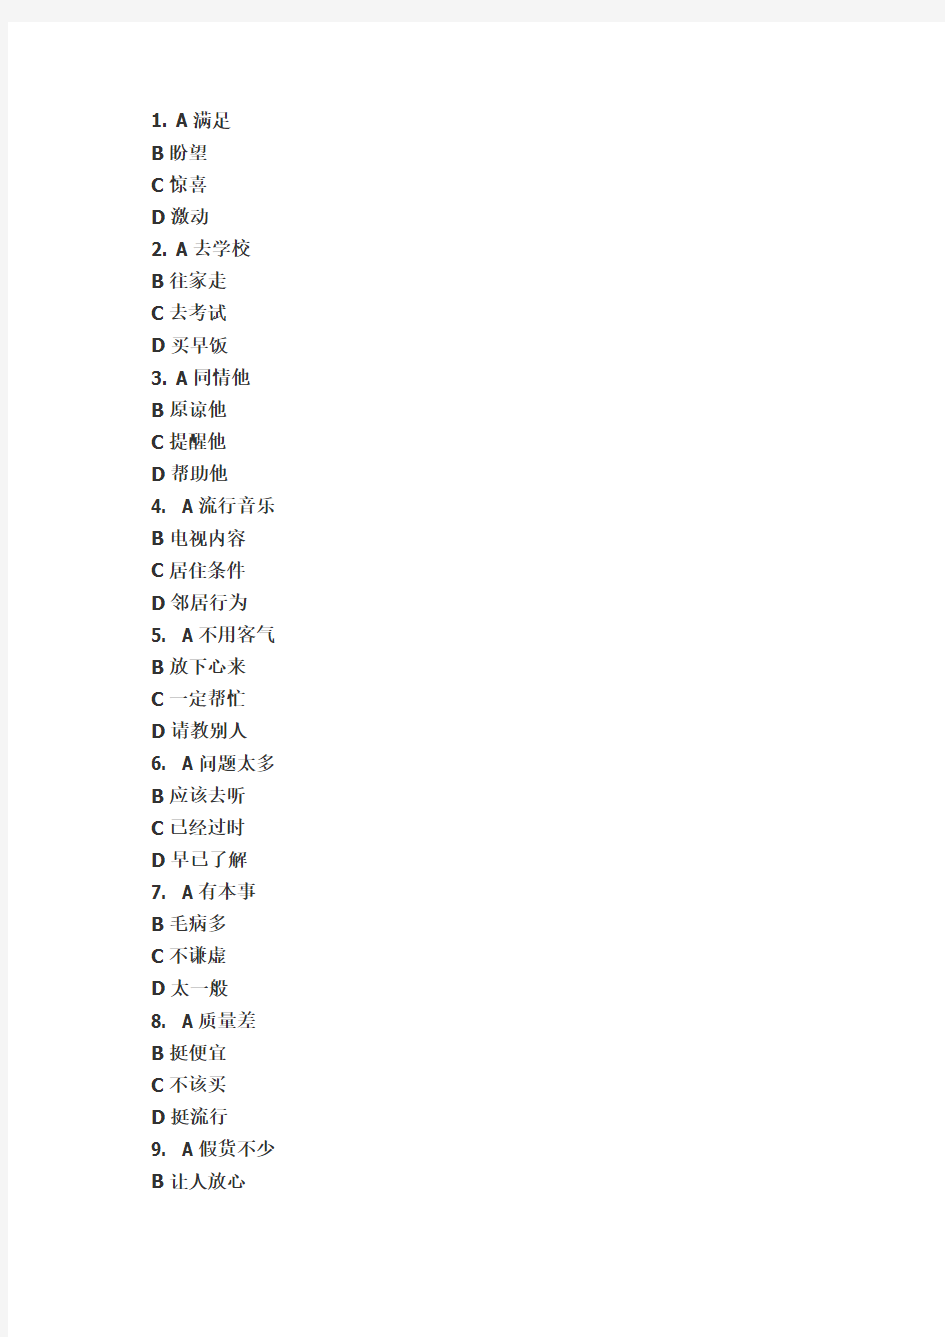 中国少数民族汉语水平等级考试MHK三级考试试卷